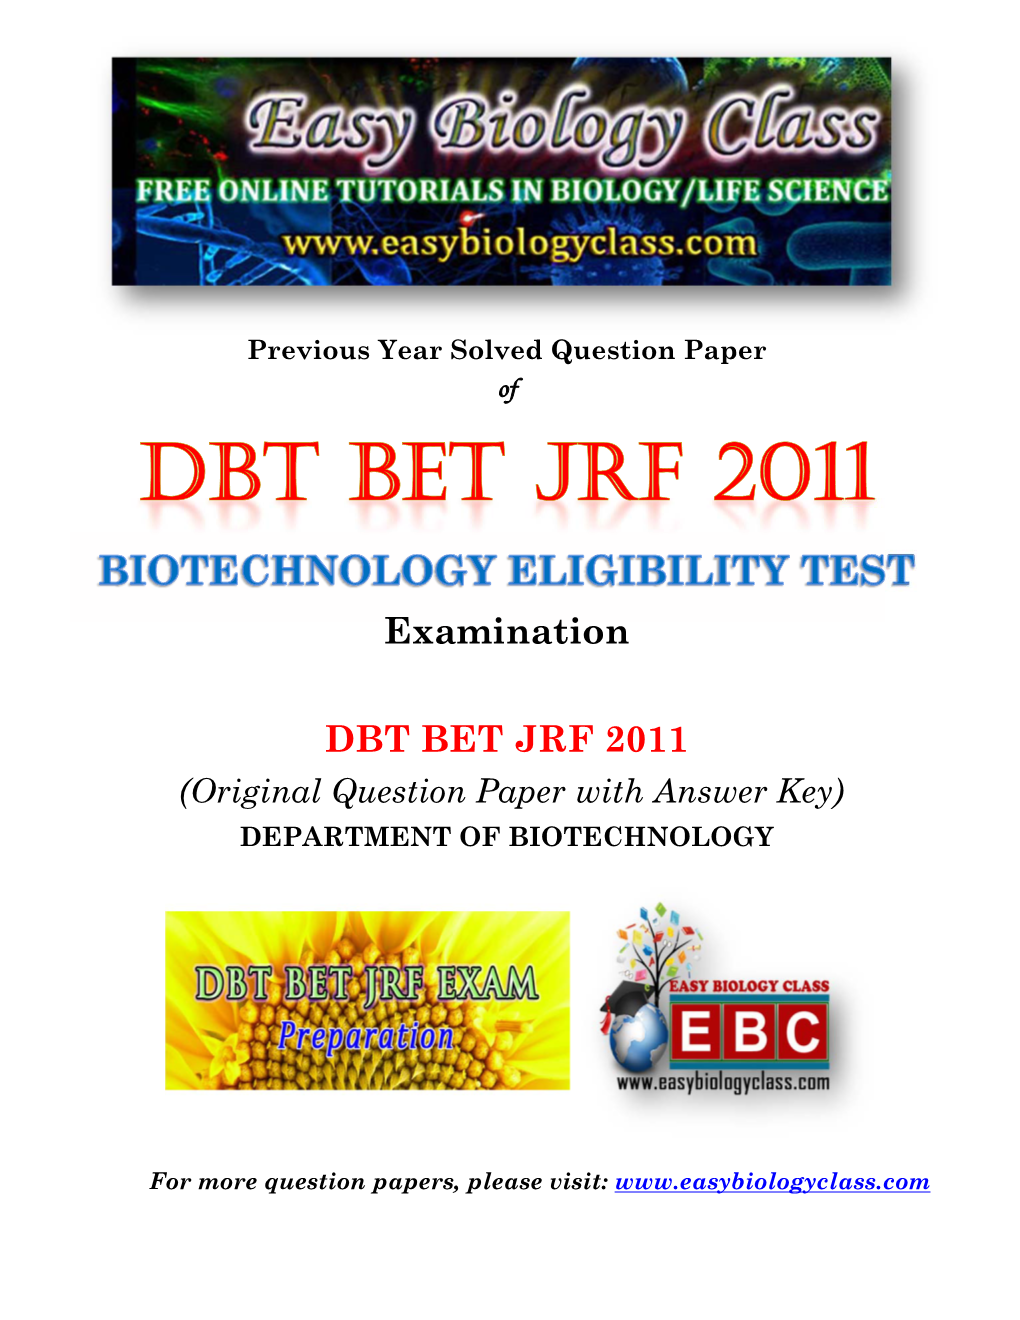 Examination DBT BET JRF 2011